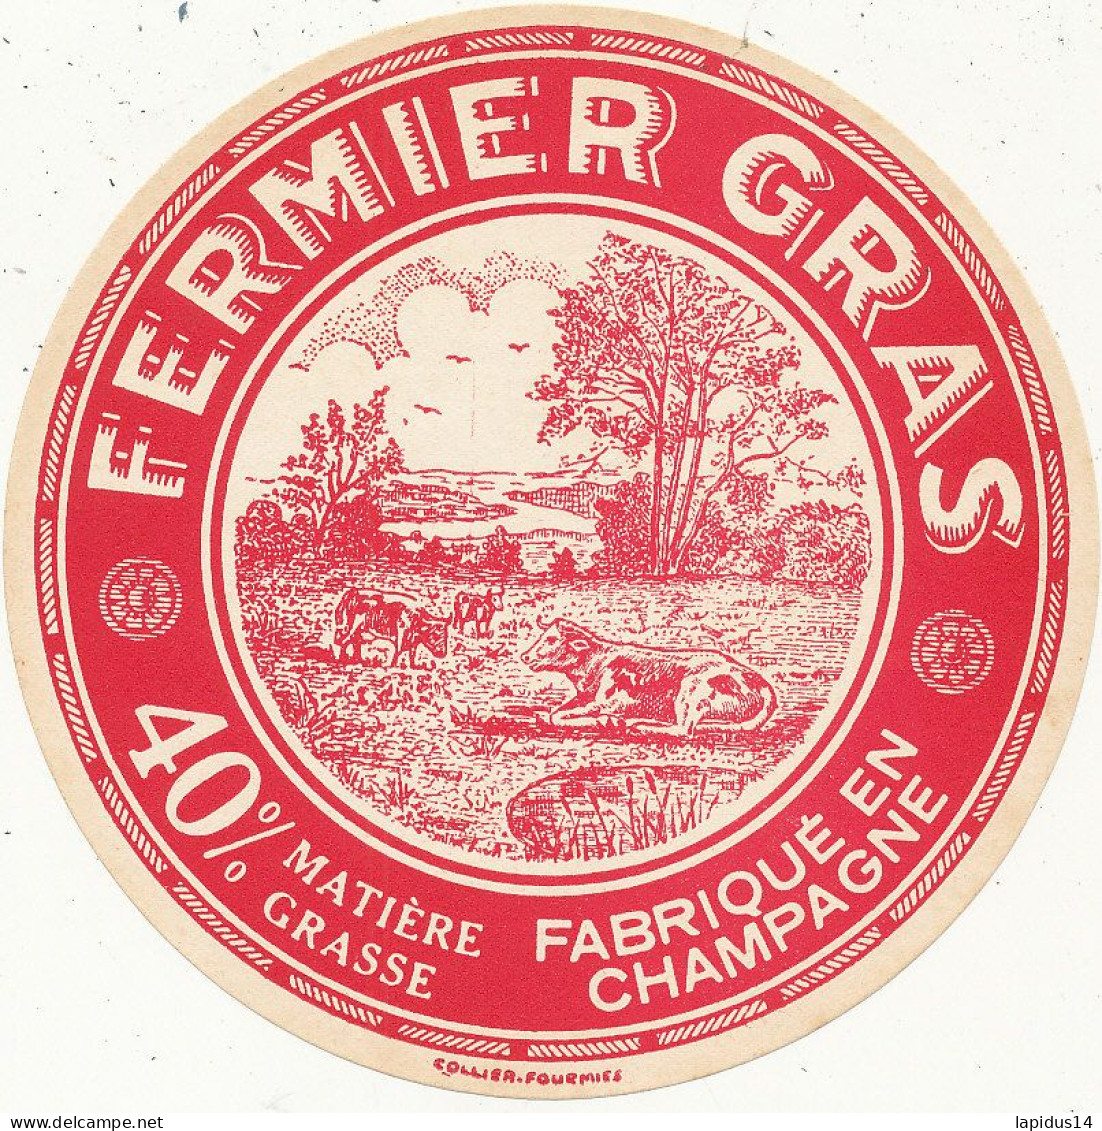 J C O  967 / ETIQUETTE FROMAGE    FERMIER GRAS  FABRIQUE EN CHAMPAGNE 40% - Fromage